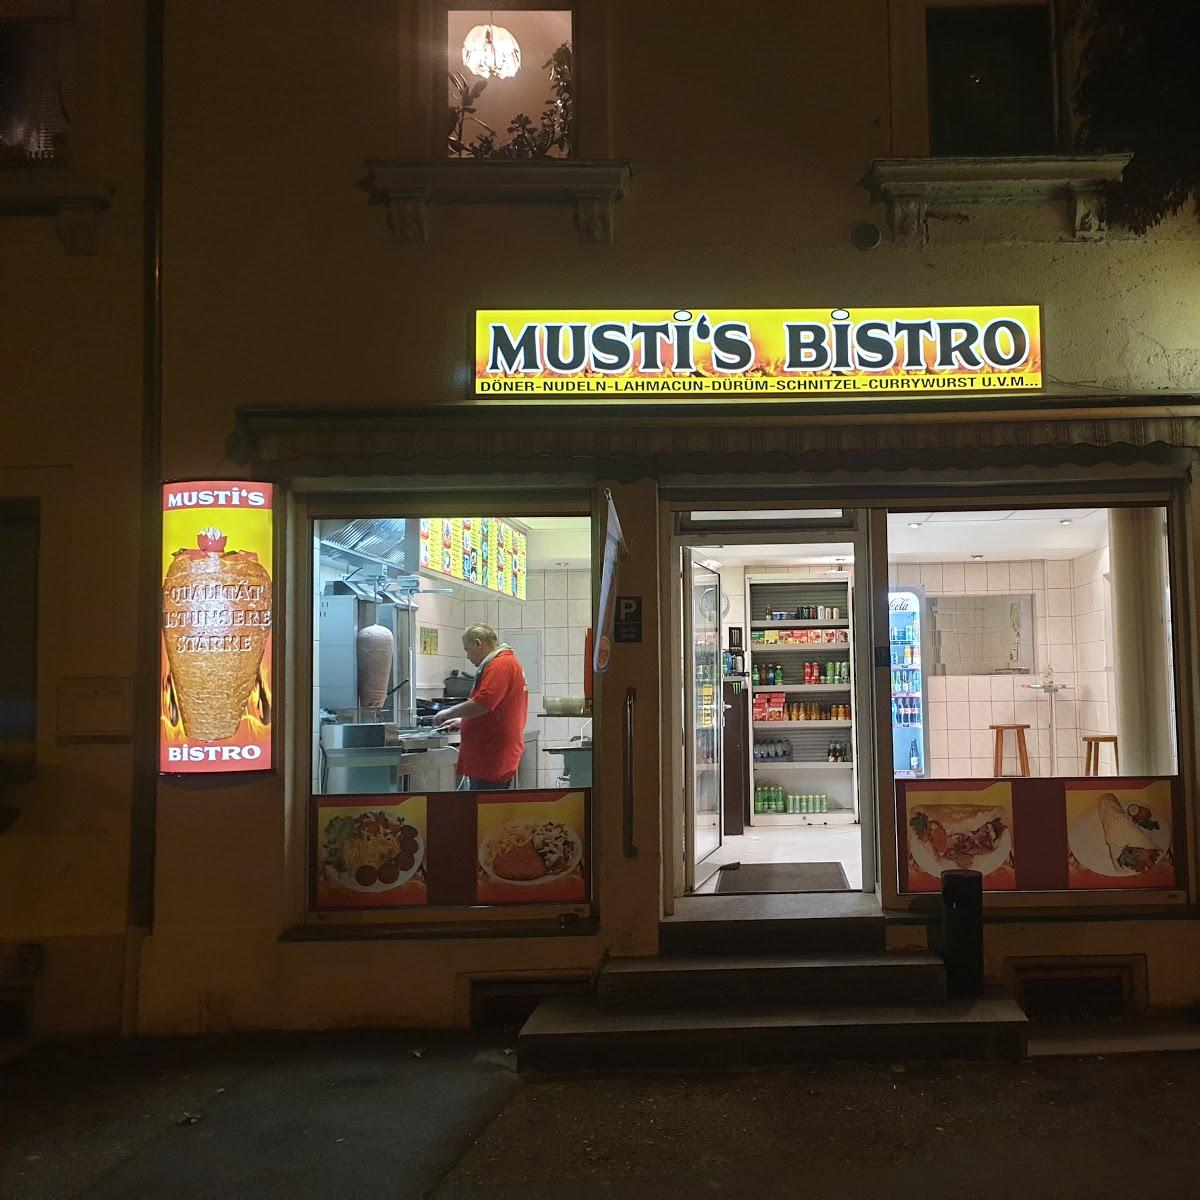 Restaurant "Musti’s Bistro" in Meißen